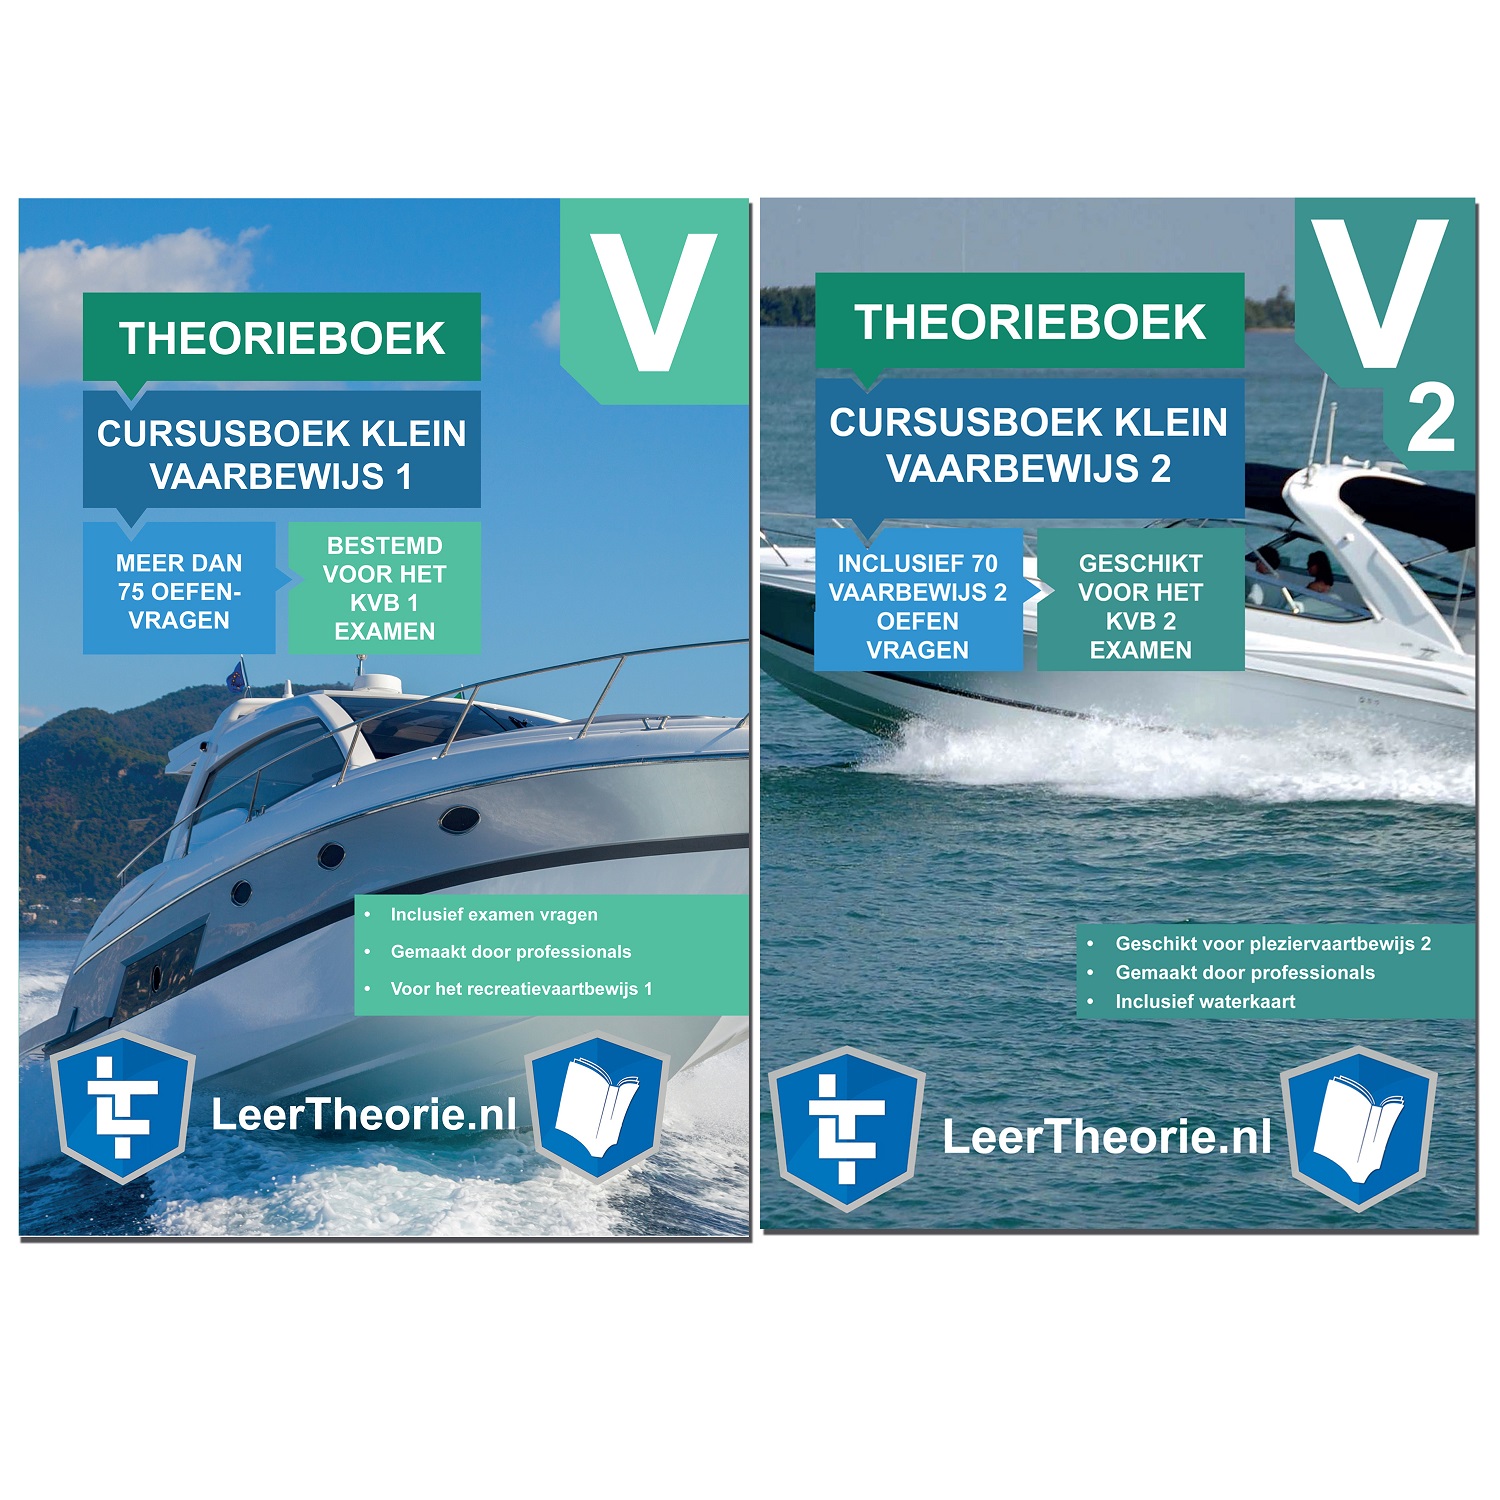 rijbewijstheorieboeken.nl - Theorieboek Cursusboek - Klein Vaarbewijs 1 - Klein Vaarbewijs 2 - Nederland - KVB 1 - KVB1 - KVB 2 - KVB2 - LeerTheorie